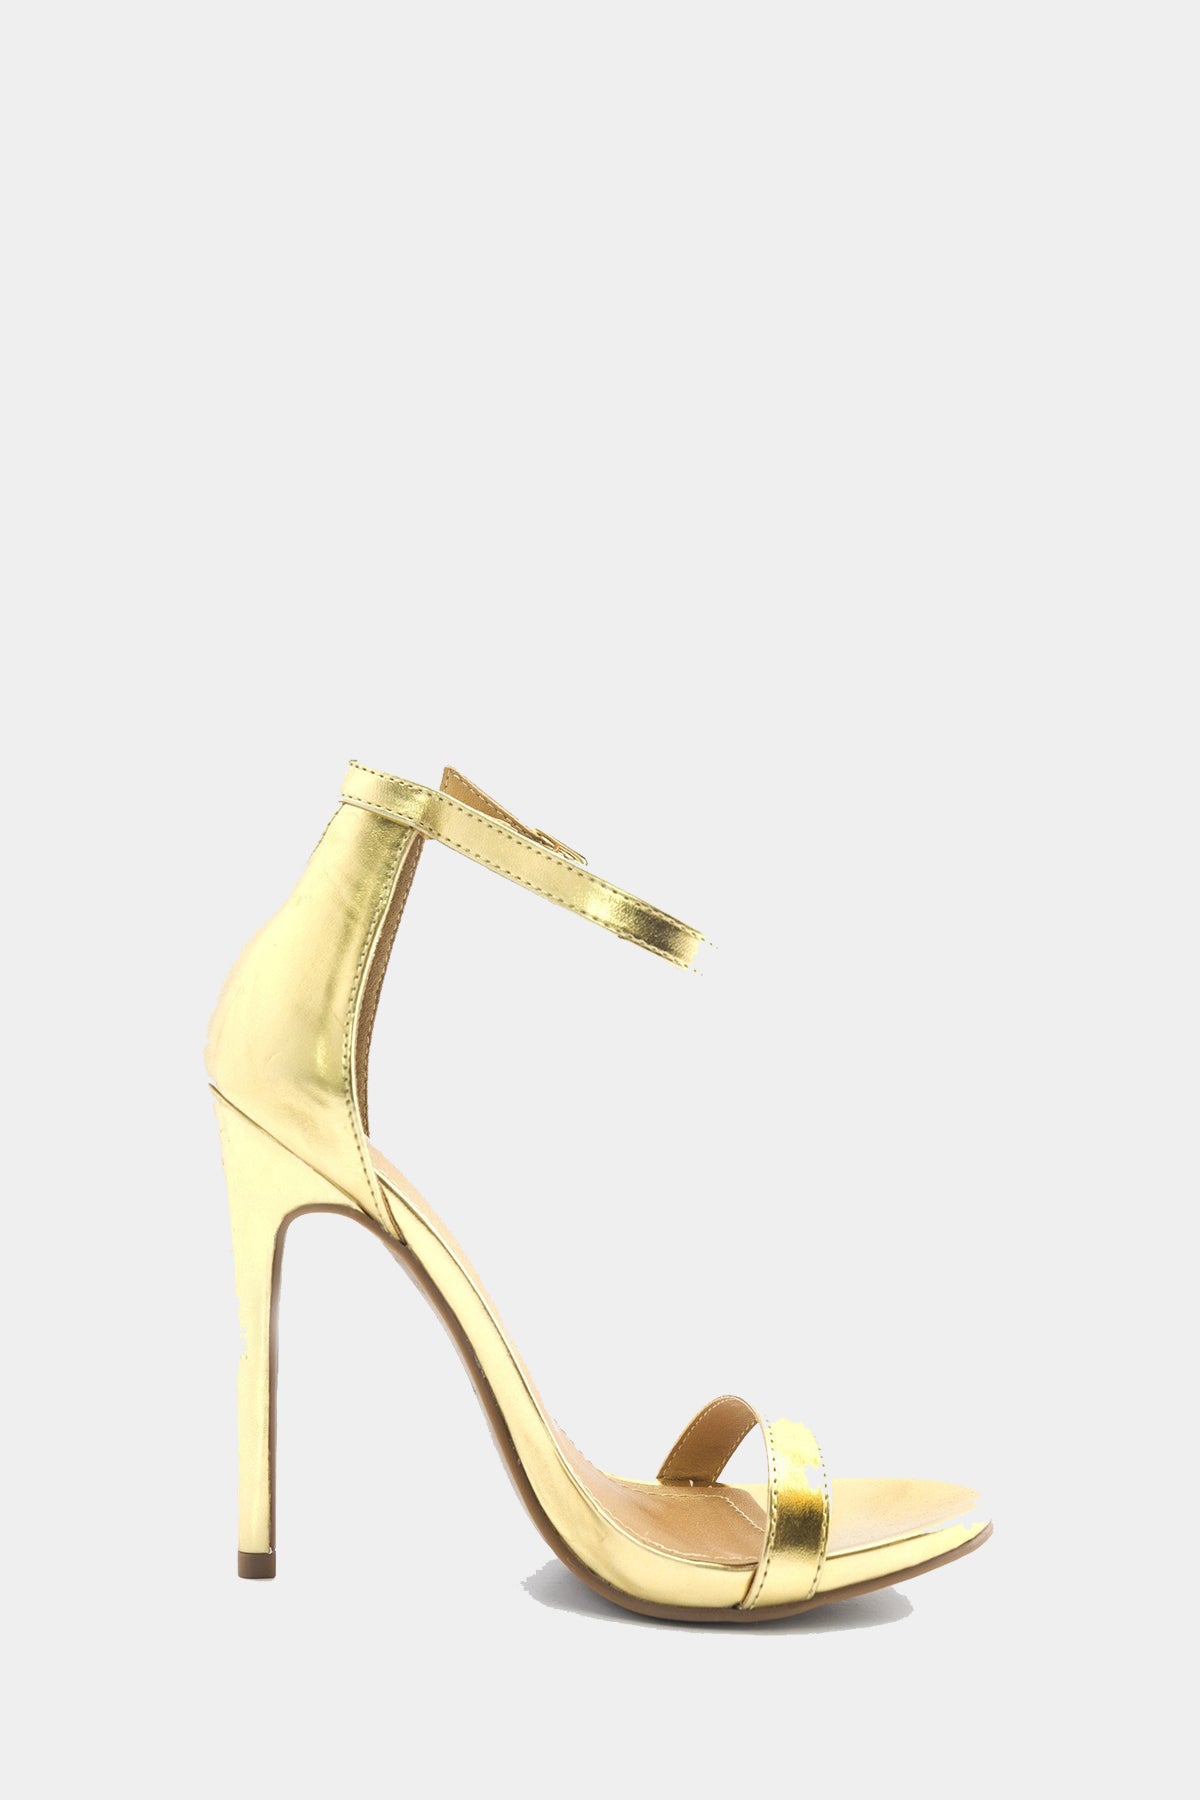 Celine Ankle Strap Heel - Gold – Haute & Rebellious